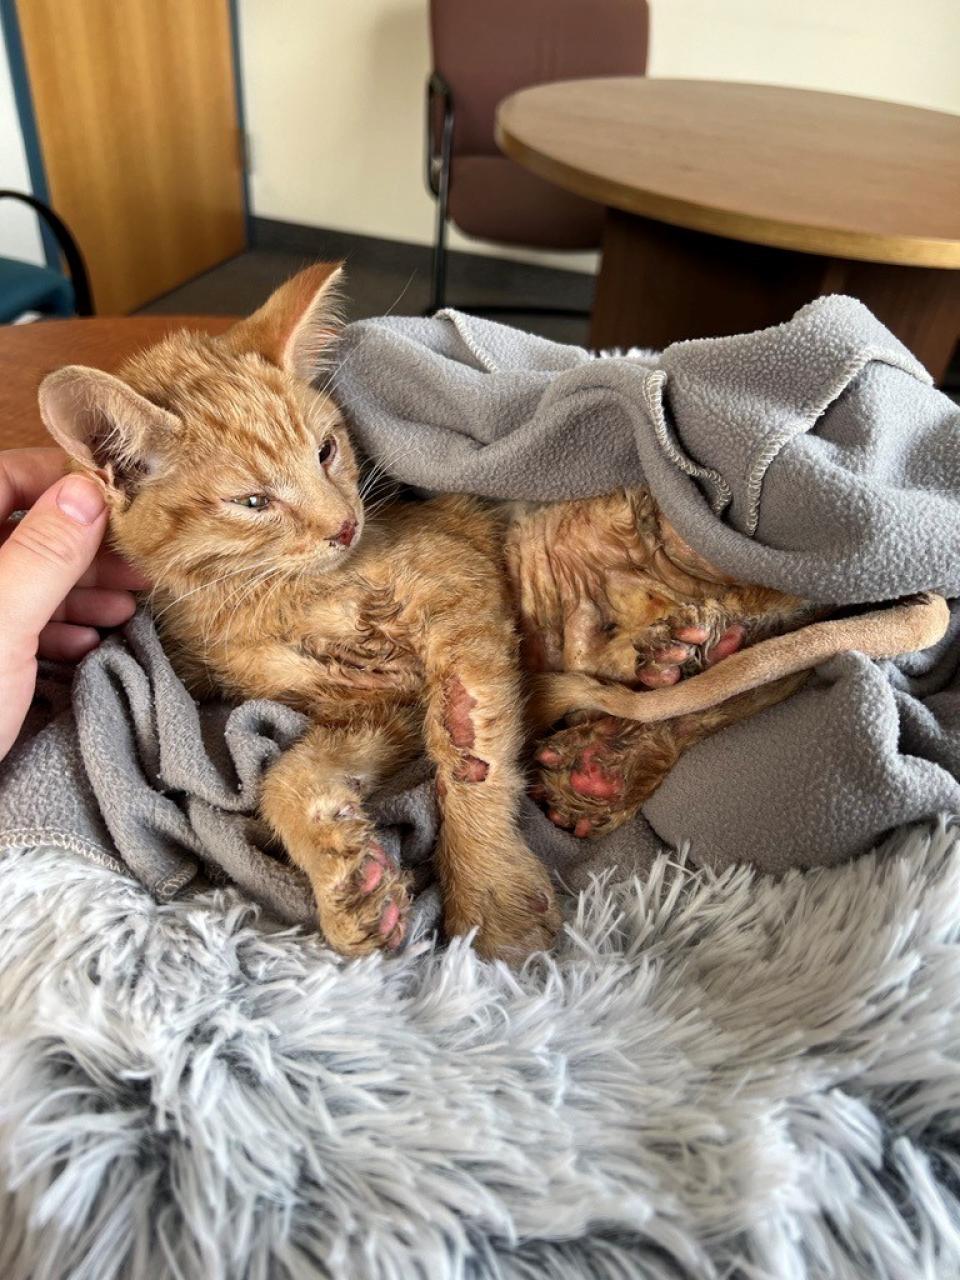 Orange kitten with injuries